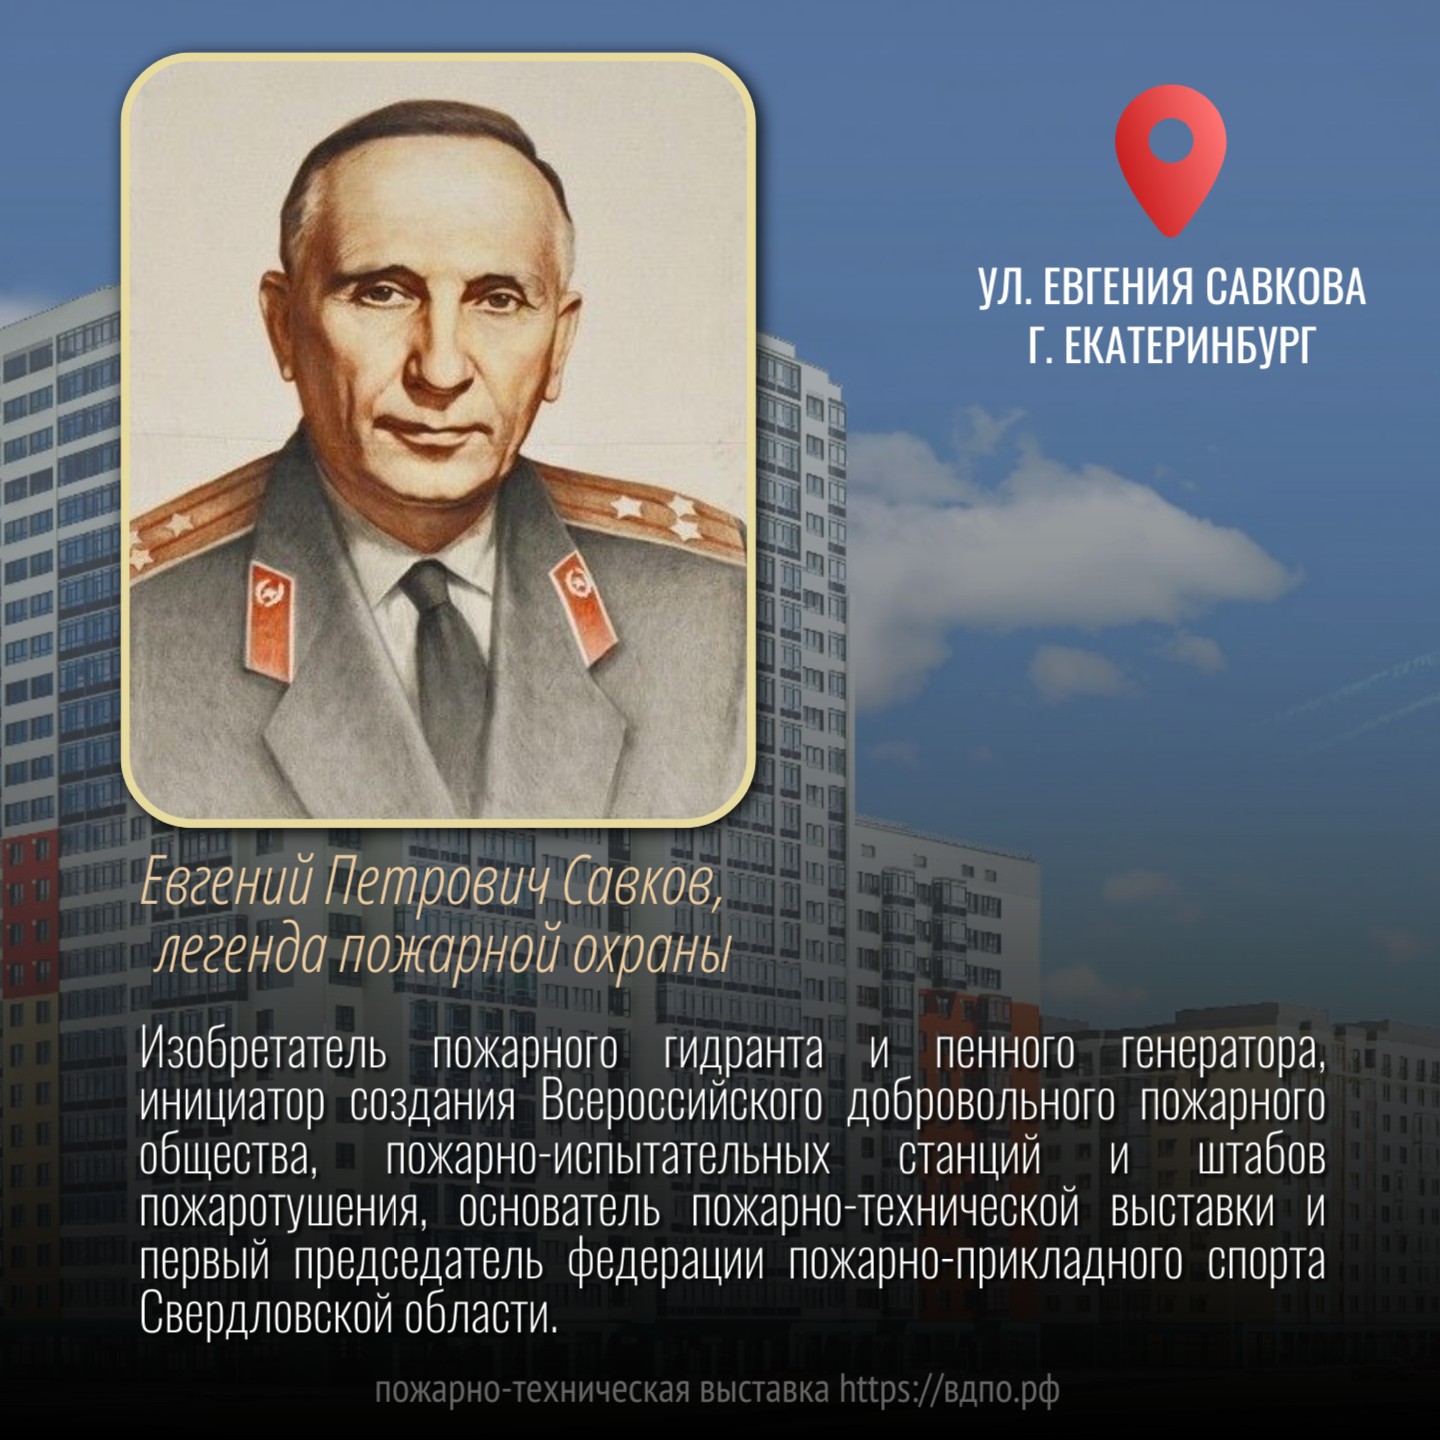 Одна из улиц Екатеринбурга названа в честь легендарного пожарного   САВКОВ Евгений Петрович  родился 09 ноября 1905 года  в городе Ленинграде в русской семье......